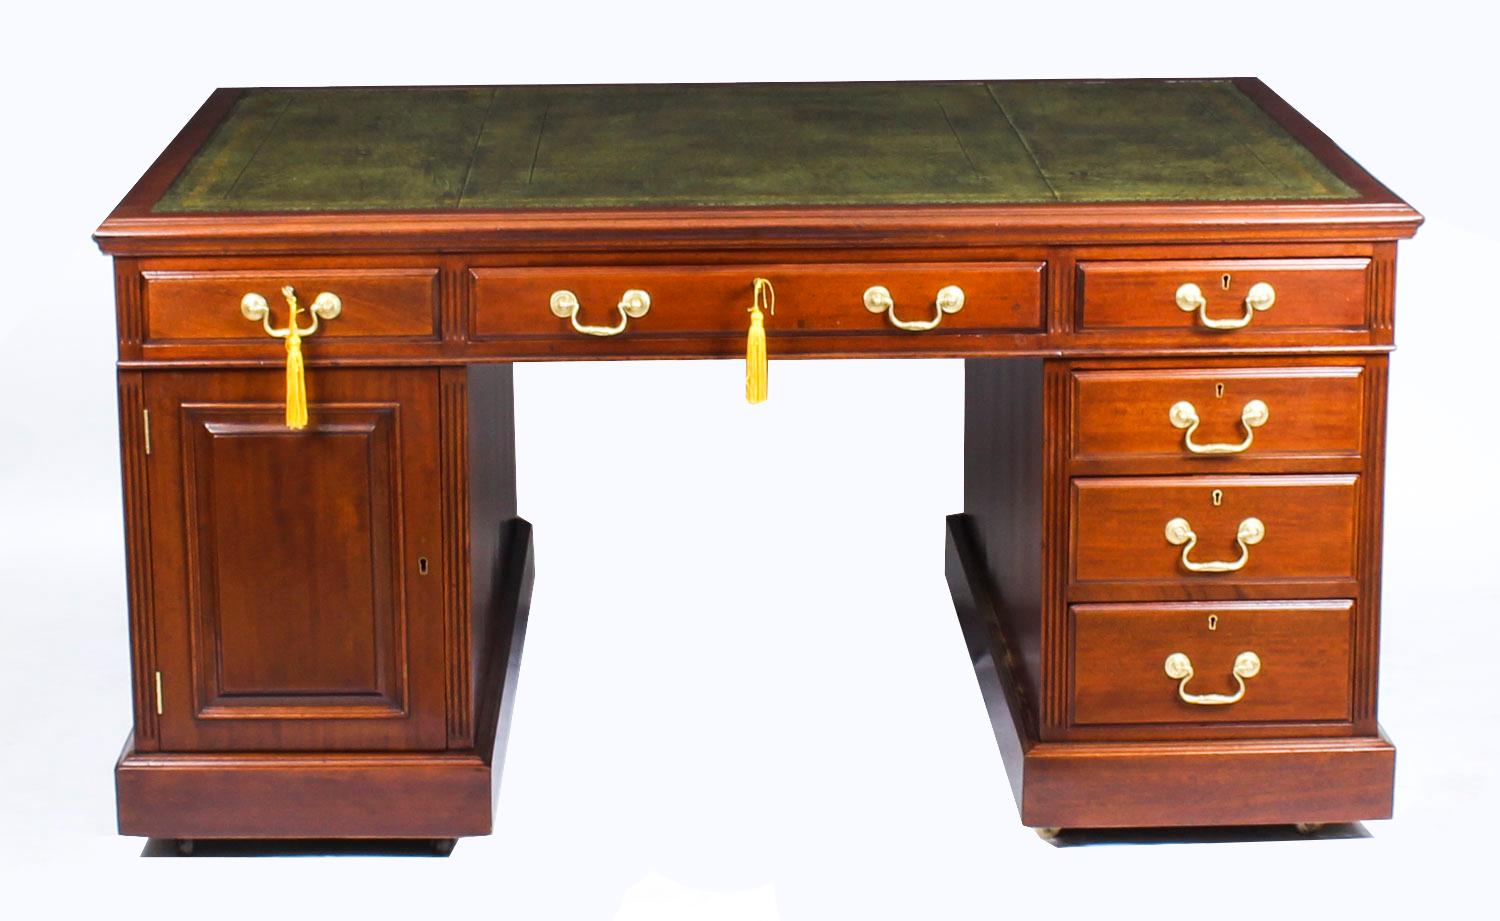 Dies ist eine wunderbare antike spätviktorianischen Mahagoni Partner Sockel Schreibtisch, ca. 1880 in Datum.

Das rechteckige Oberteil ist mit einer atemberaubenden Schreibfläche aus grünem und goldfarbenem Leder versehen. Dieser atemberaubende